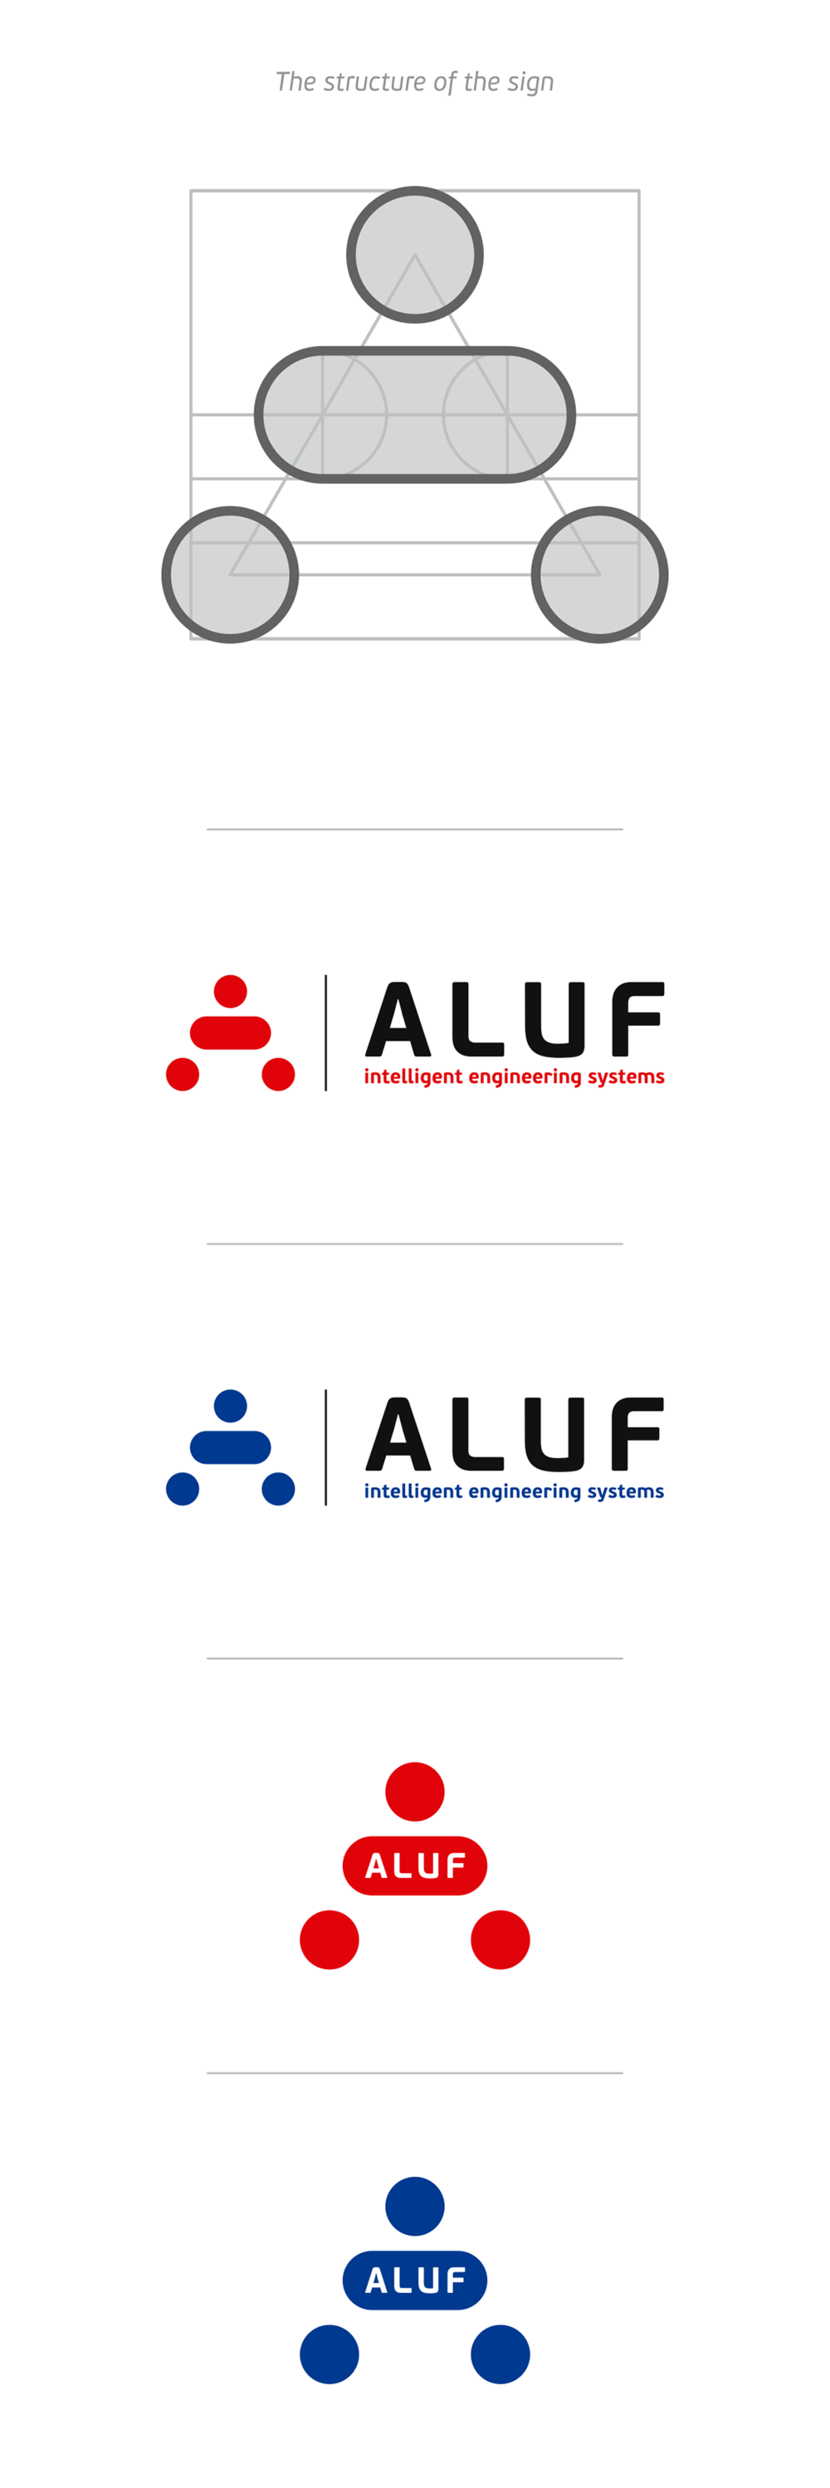 + - логотип компании (технологическая компания, разработка проектов и внедрение систем пожарной безопасности, технической безопасности, связи и автоматизации)